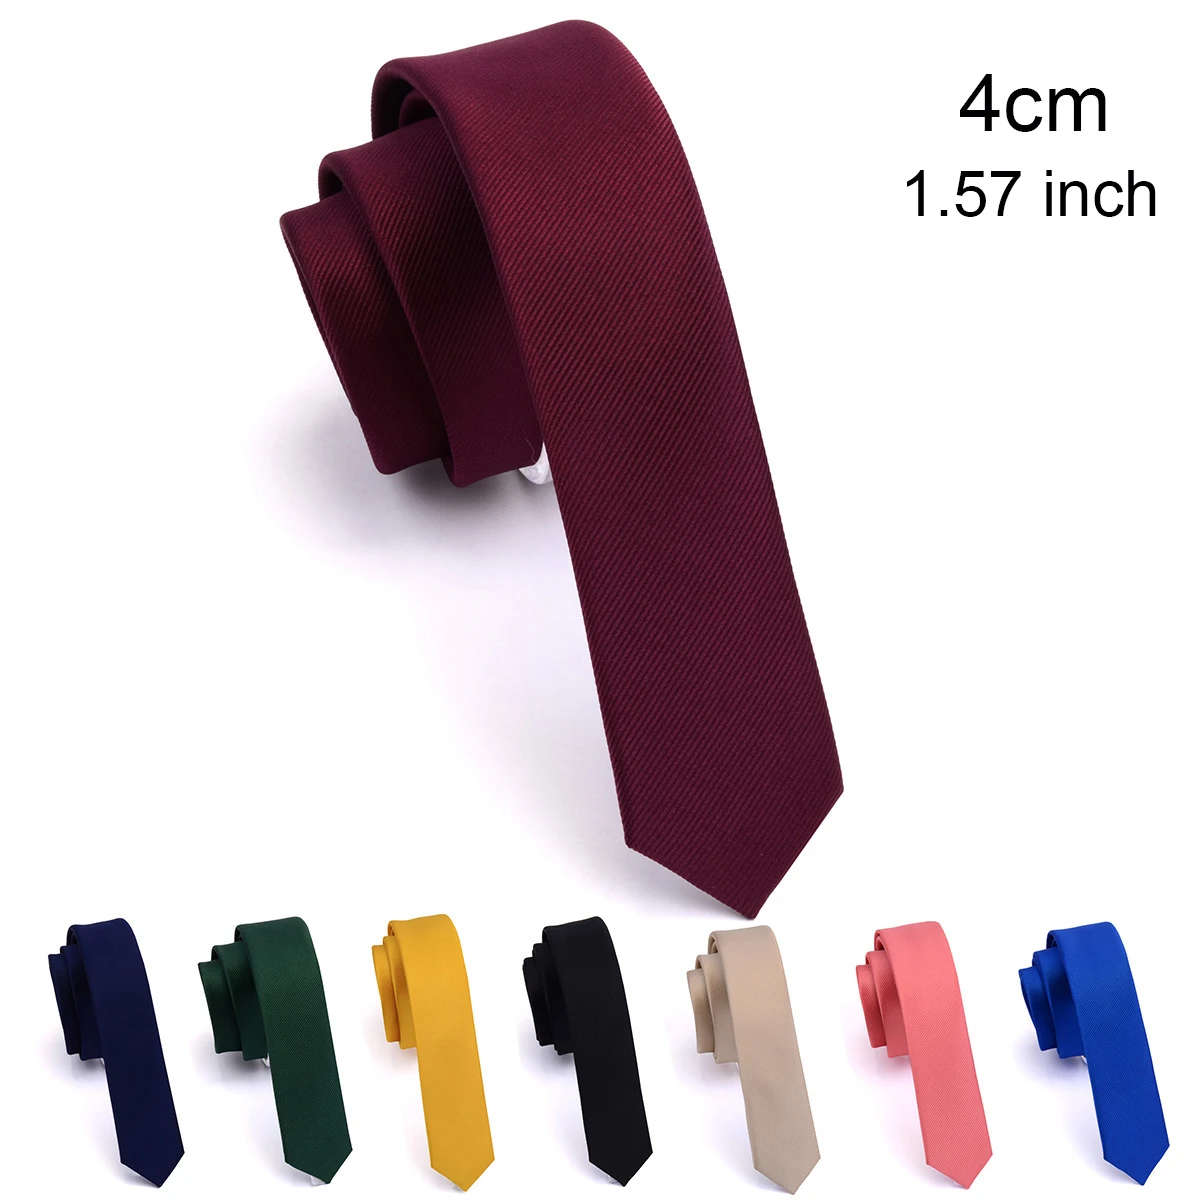 GUSLESON jakość Casual 4cm Slim solidny krawat czerwony żółty zielony krawaty Handmade moda męska cienki krawat na wesele|Men's & Handkerchiefs| - AliExpress